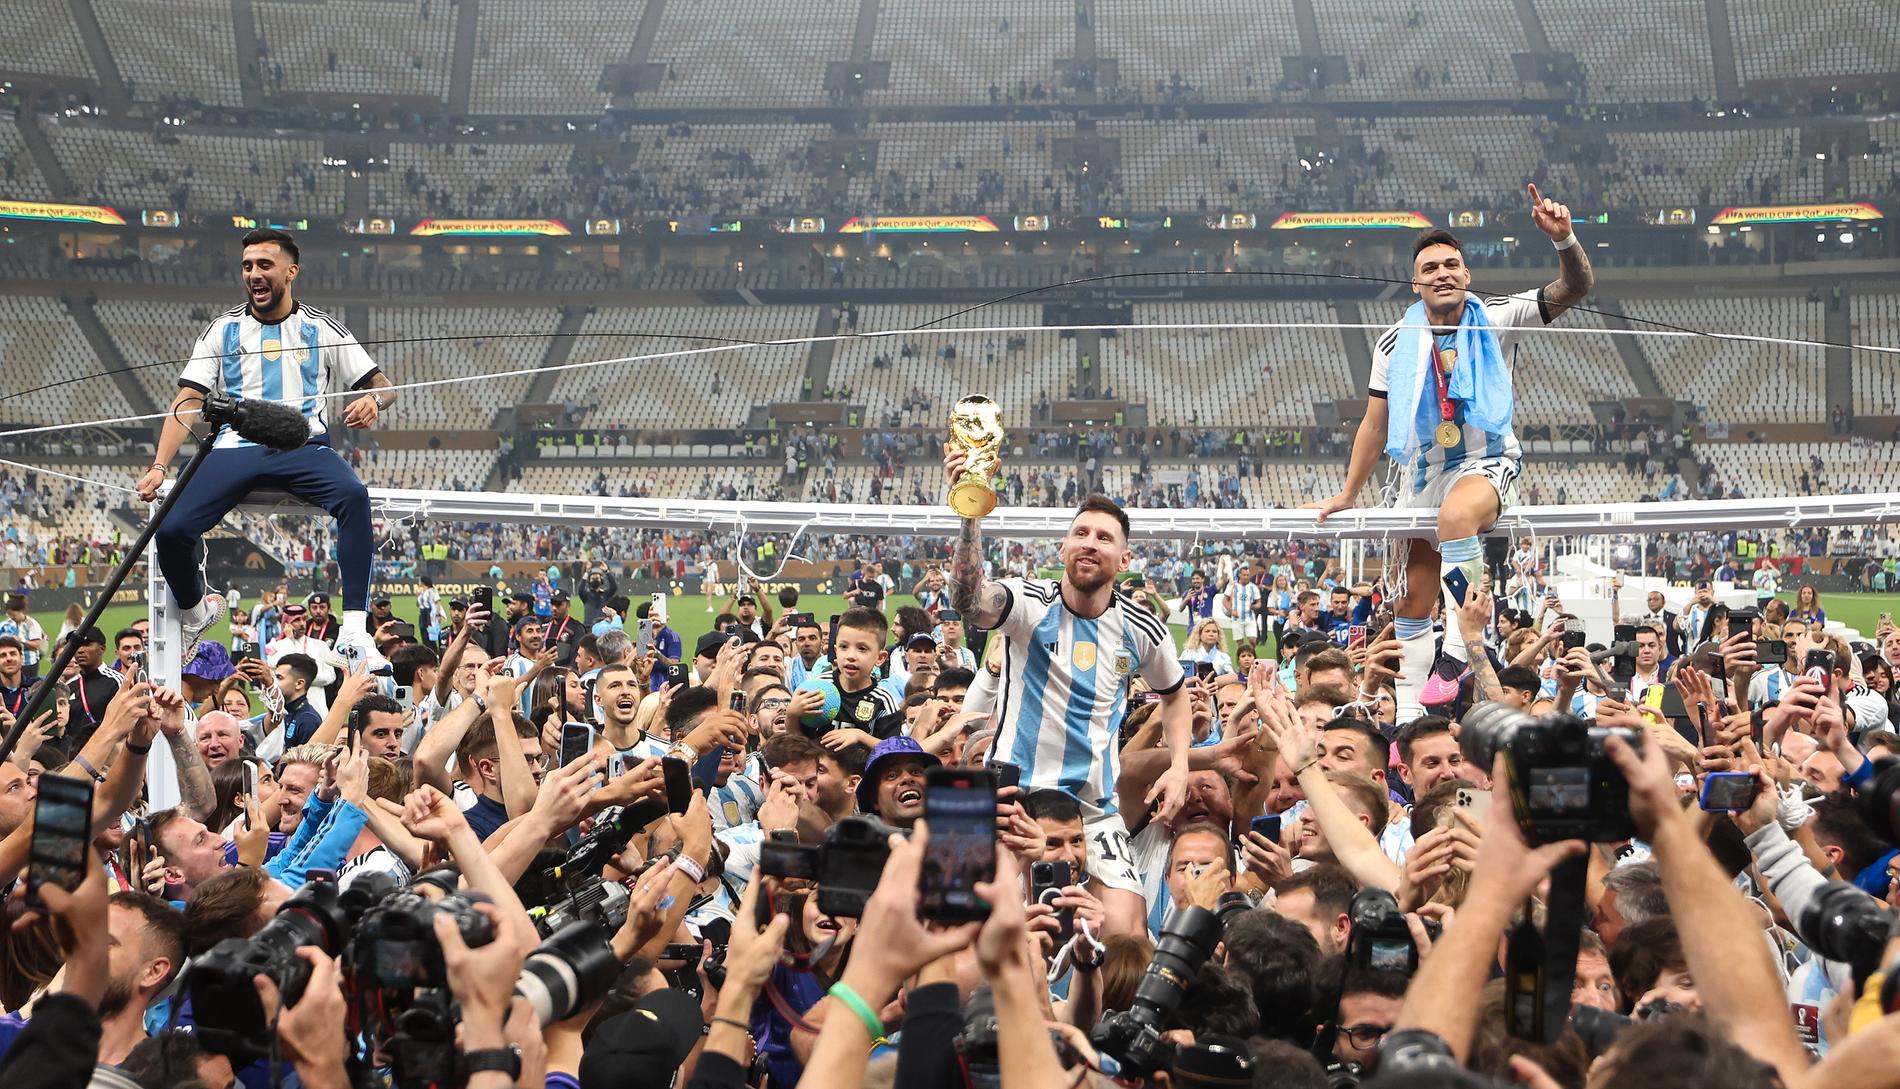 Leo Messi bär runt på Sergio Agüeros axlar – iklädd matchtröja med tre stjärnor. 